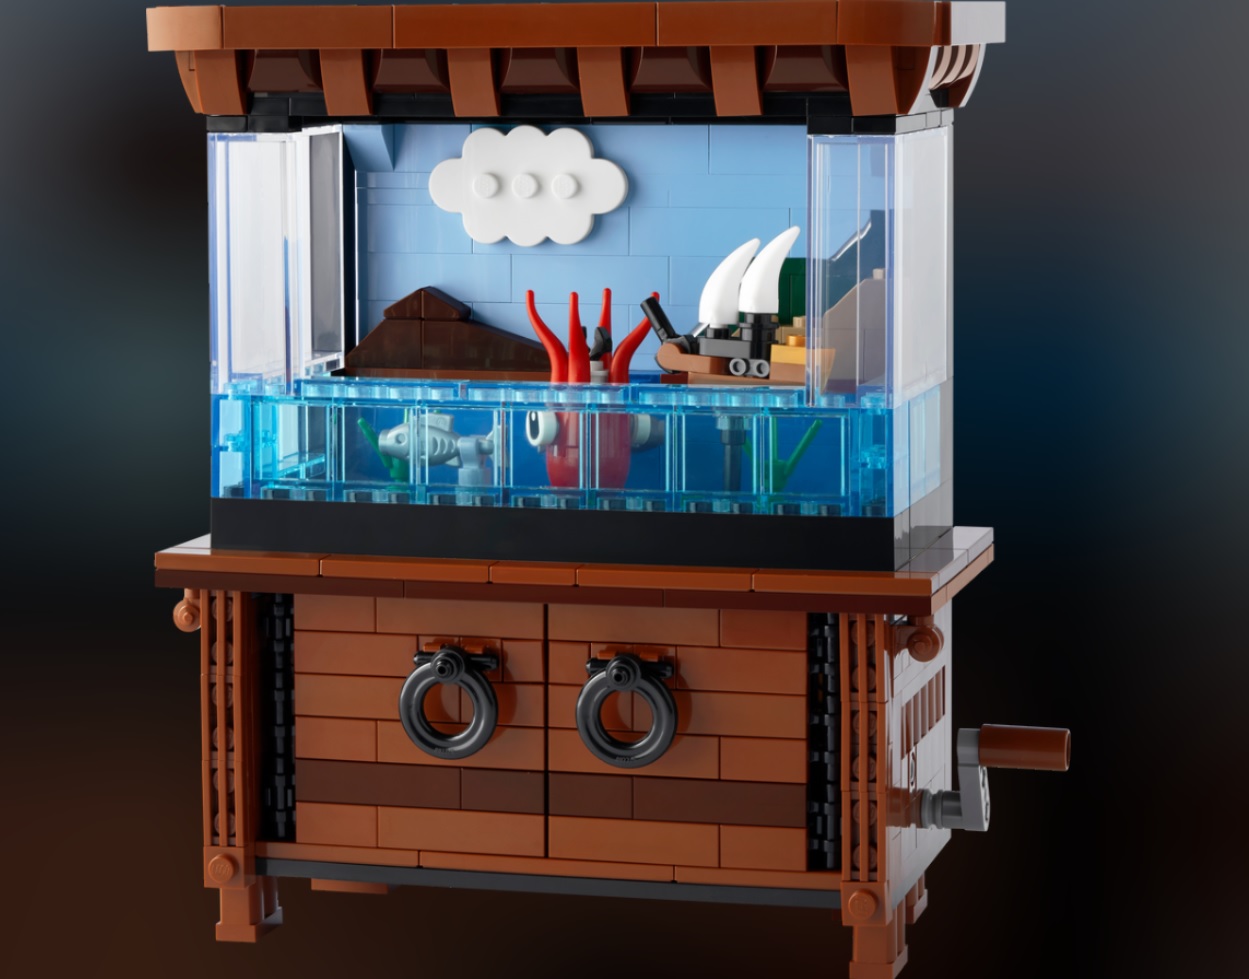 LEGO BrickLink Designer Program Round 2 Official Set Images - The